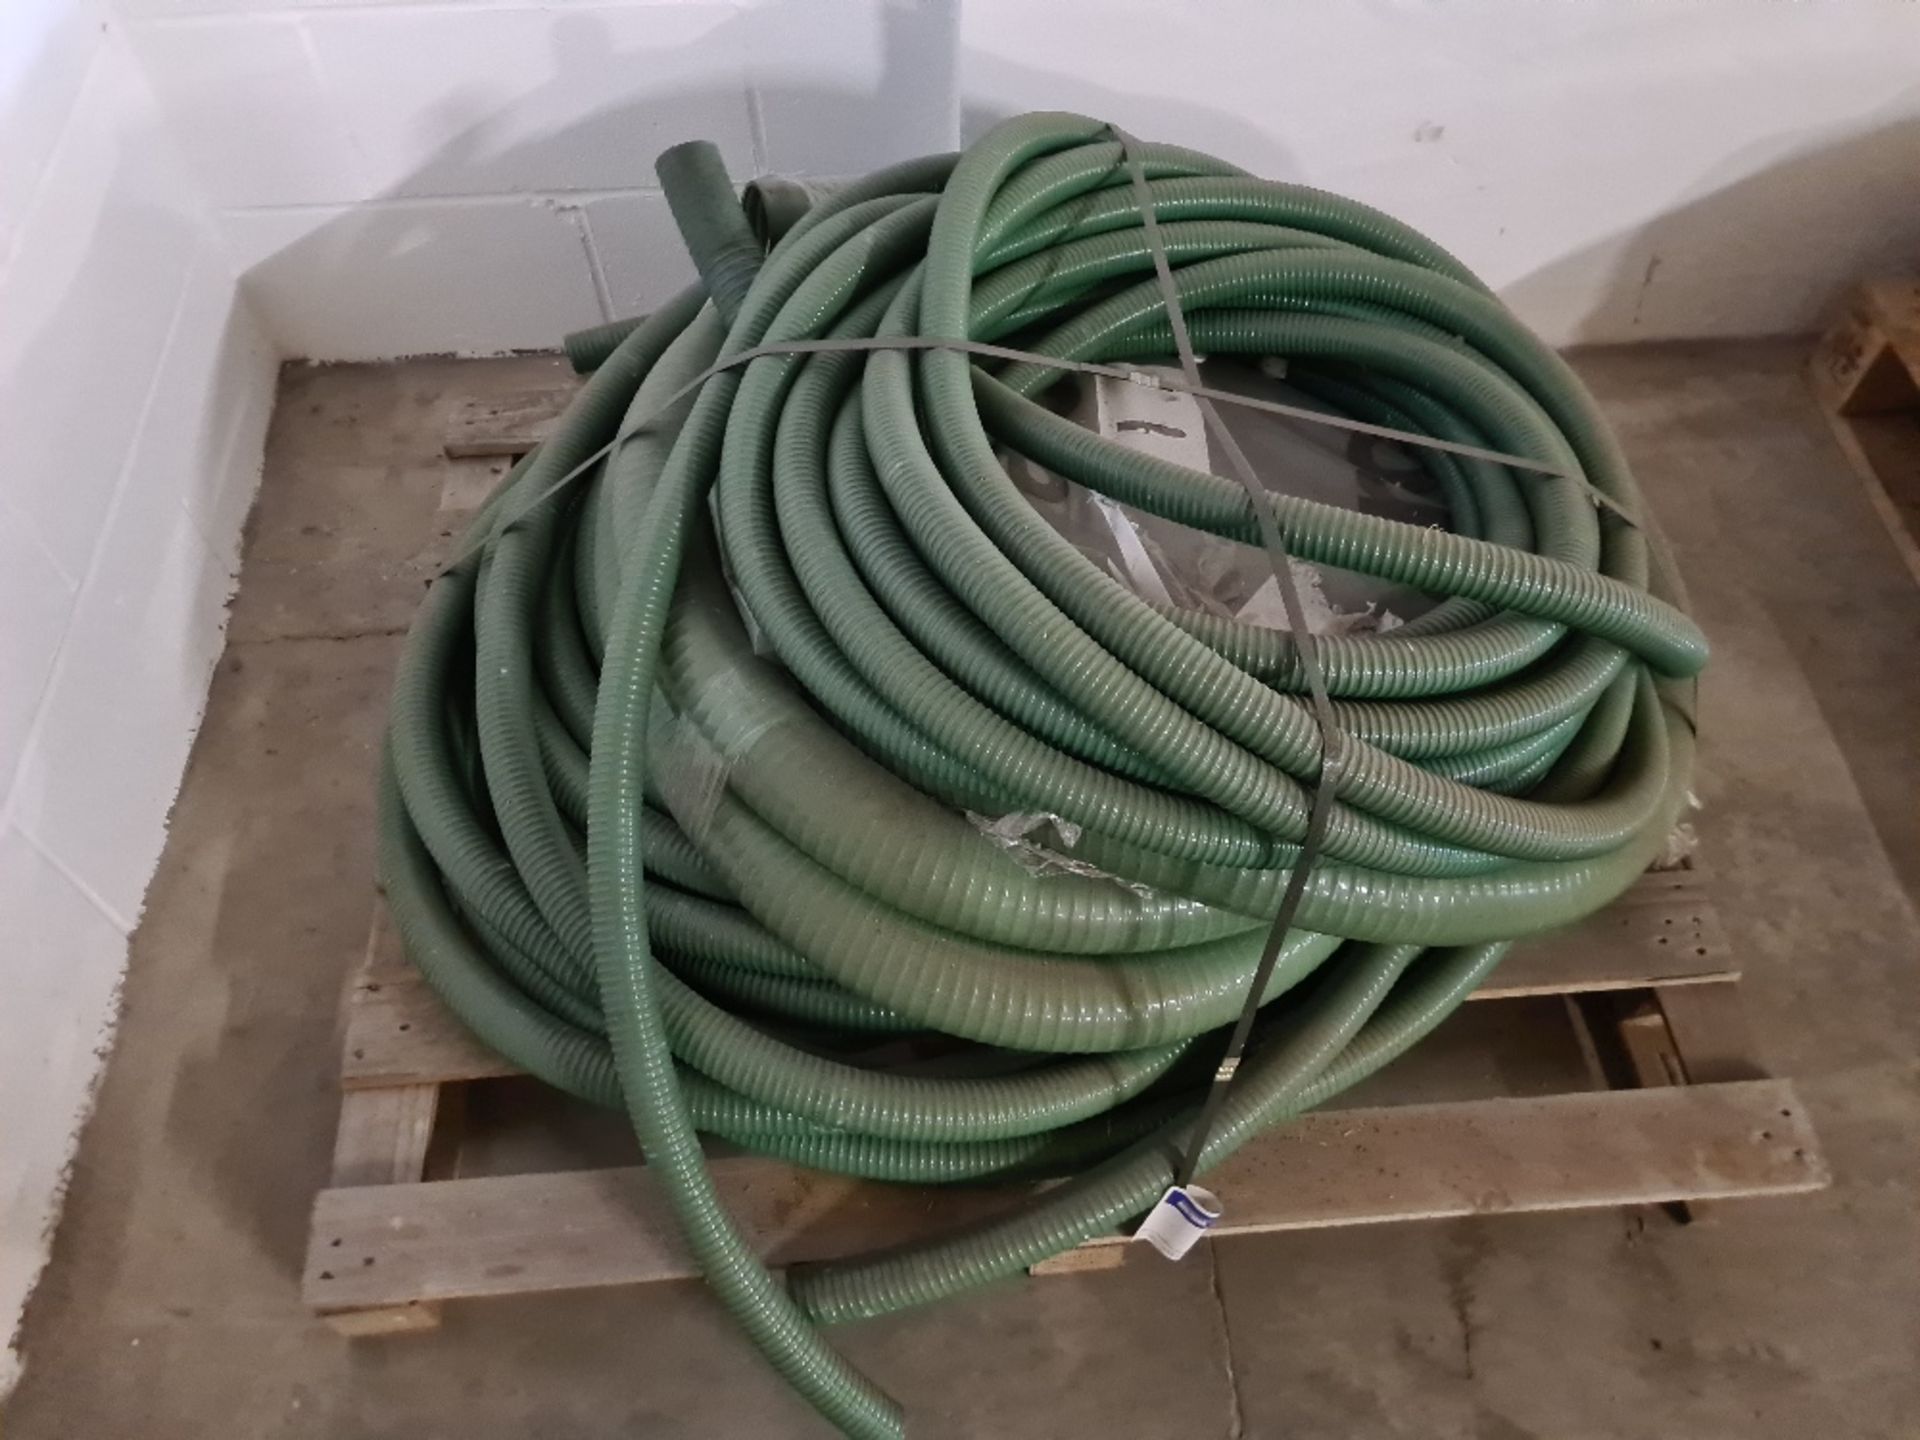 Pallet of green hose.